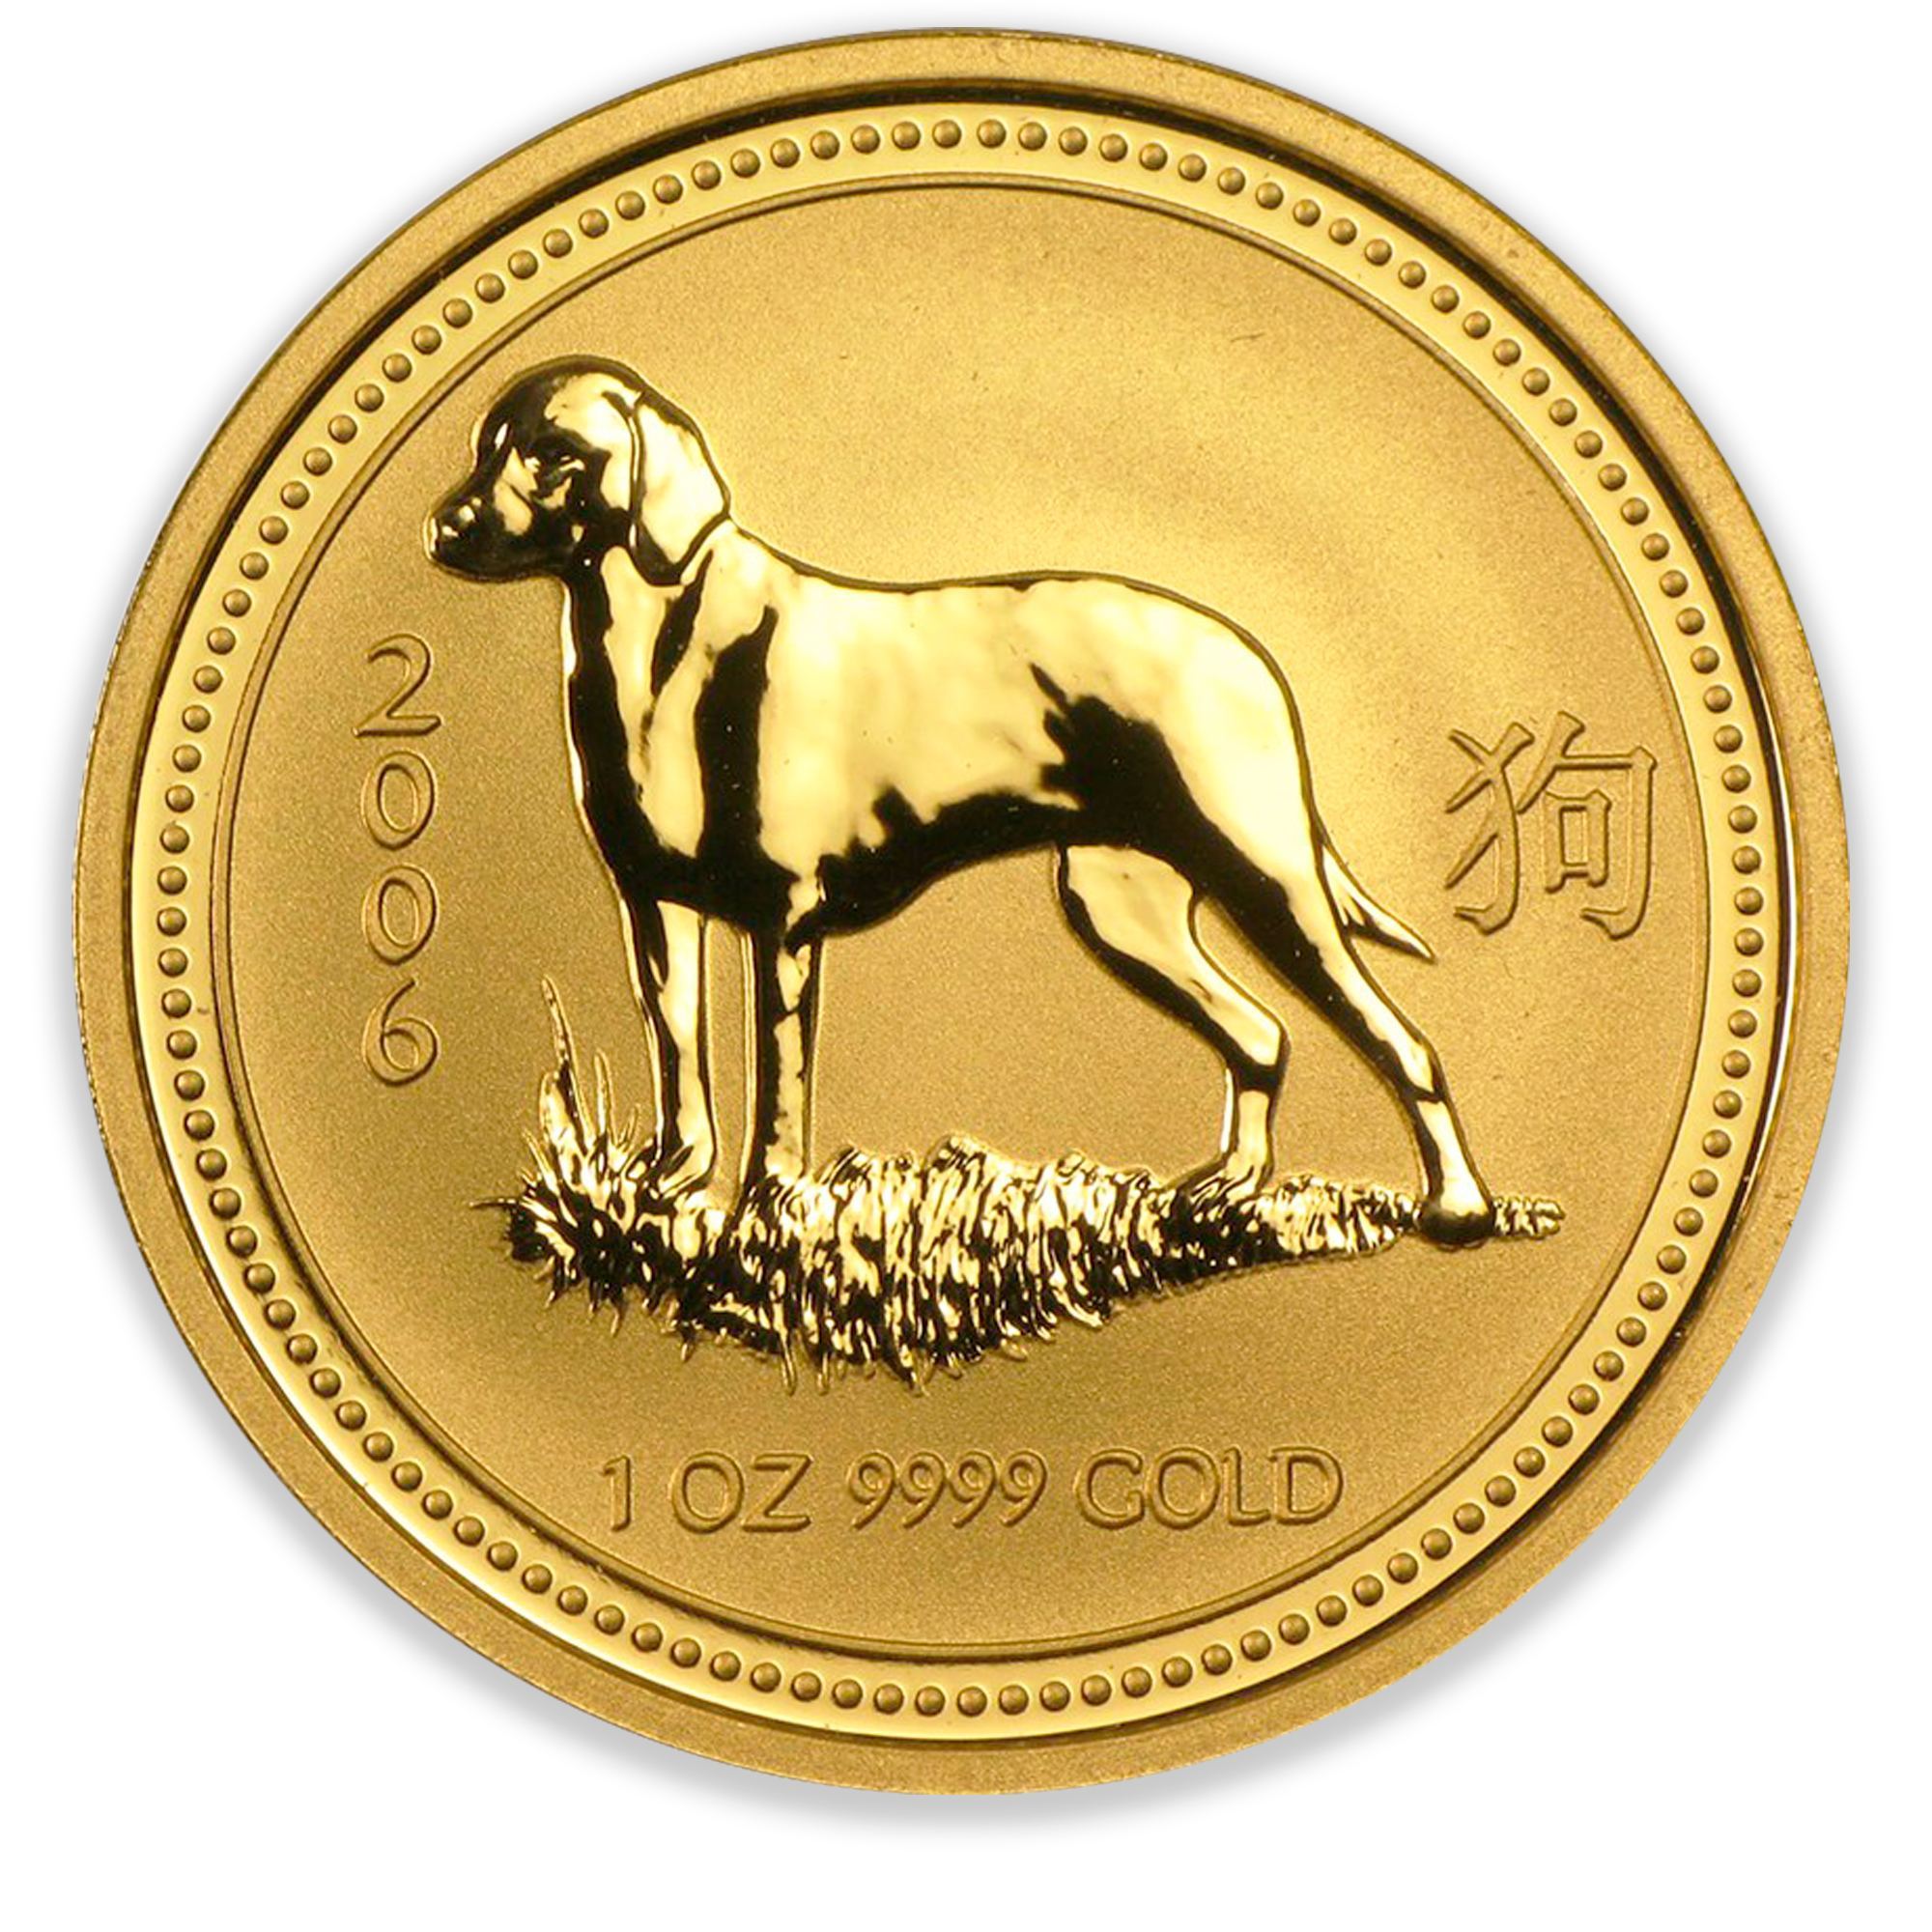 Bendog монета. Золотая монета «австралийский Лунар – 2006 год». Золотые монеты австралийские Лунар. «Австралийский Лунар – 2006 год» Елизаветта. Золотая монета «Лунар-2 год быка» 1 oz.